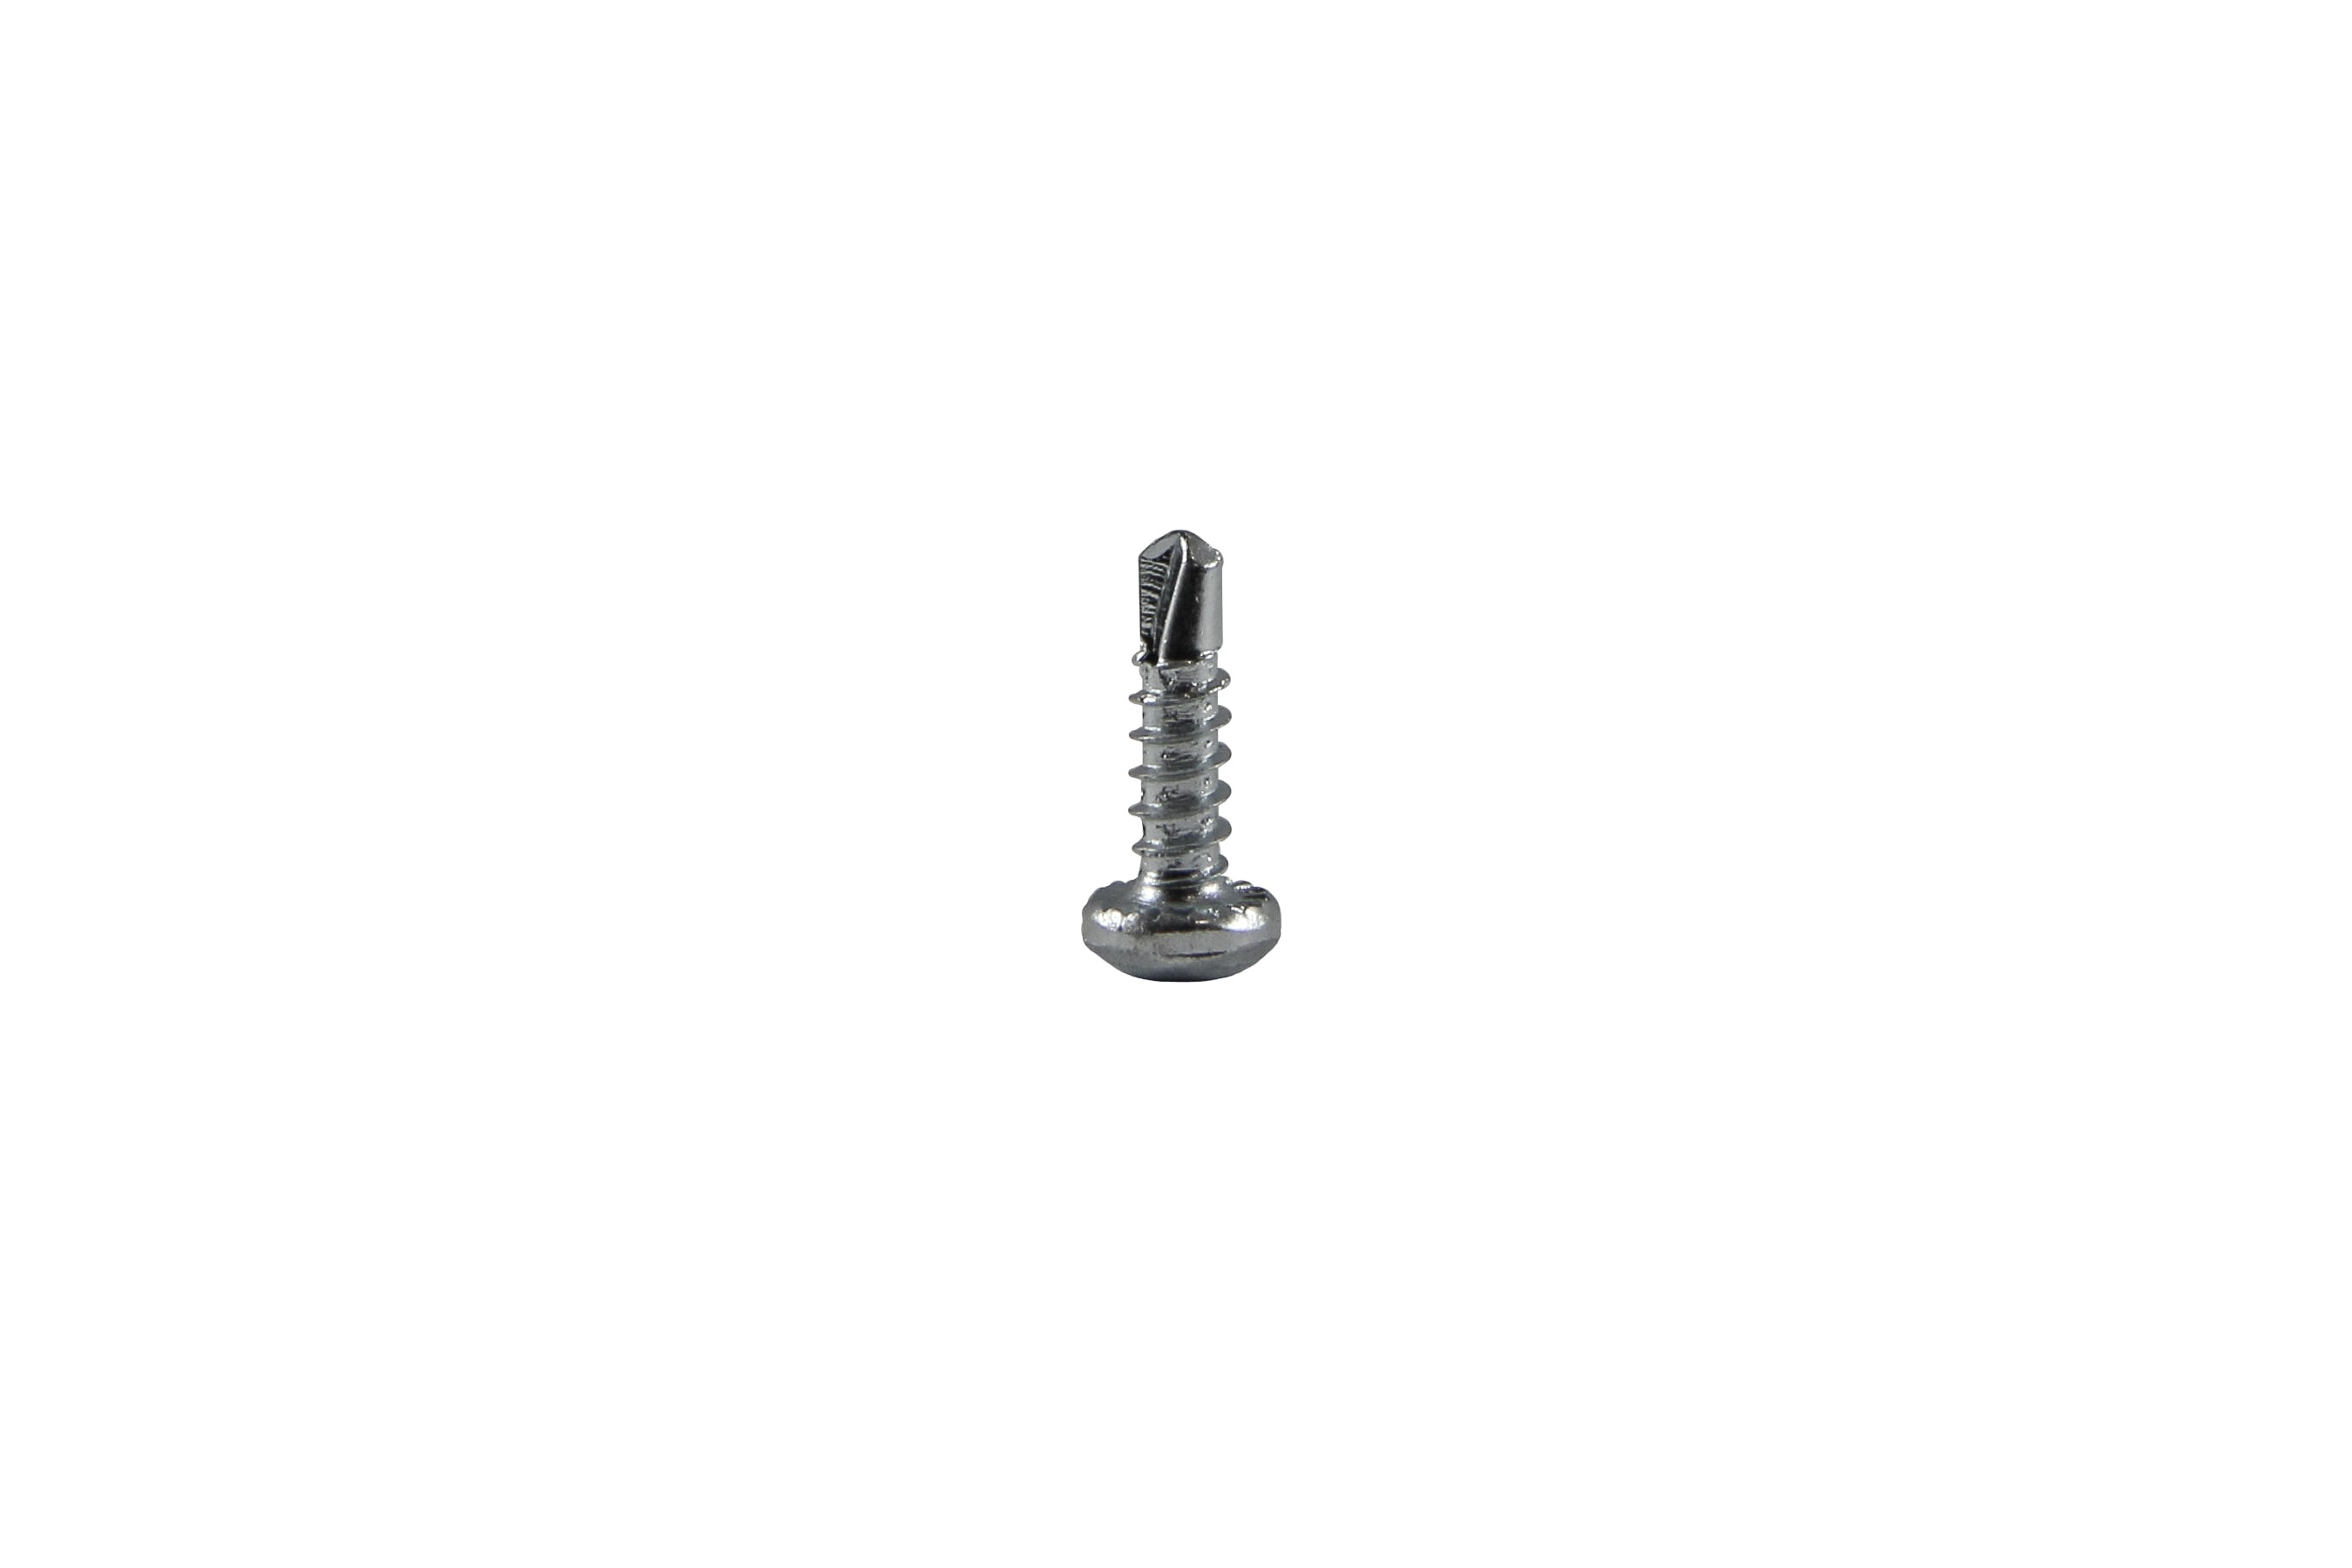 Drilling screw 3,5 x 13 mm